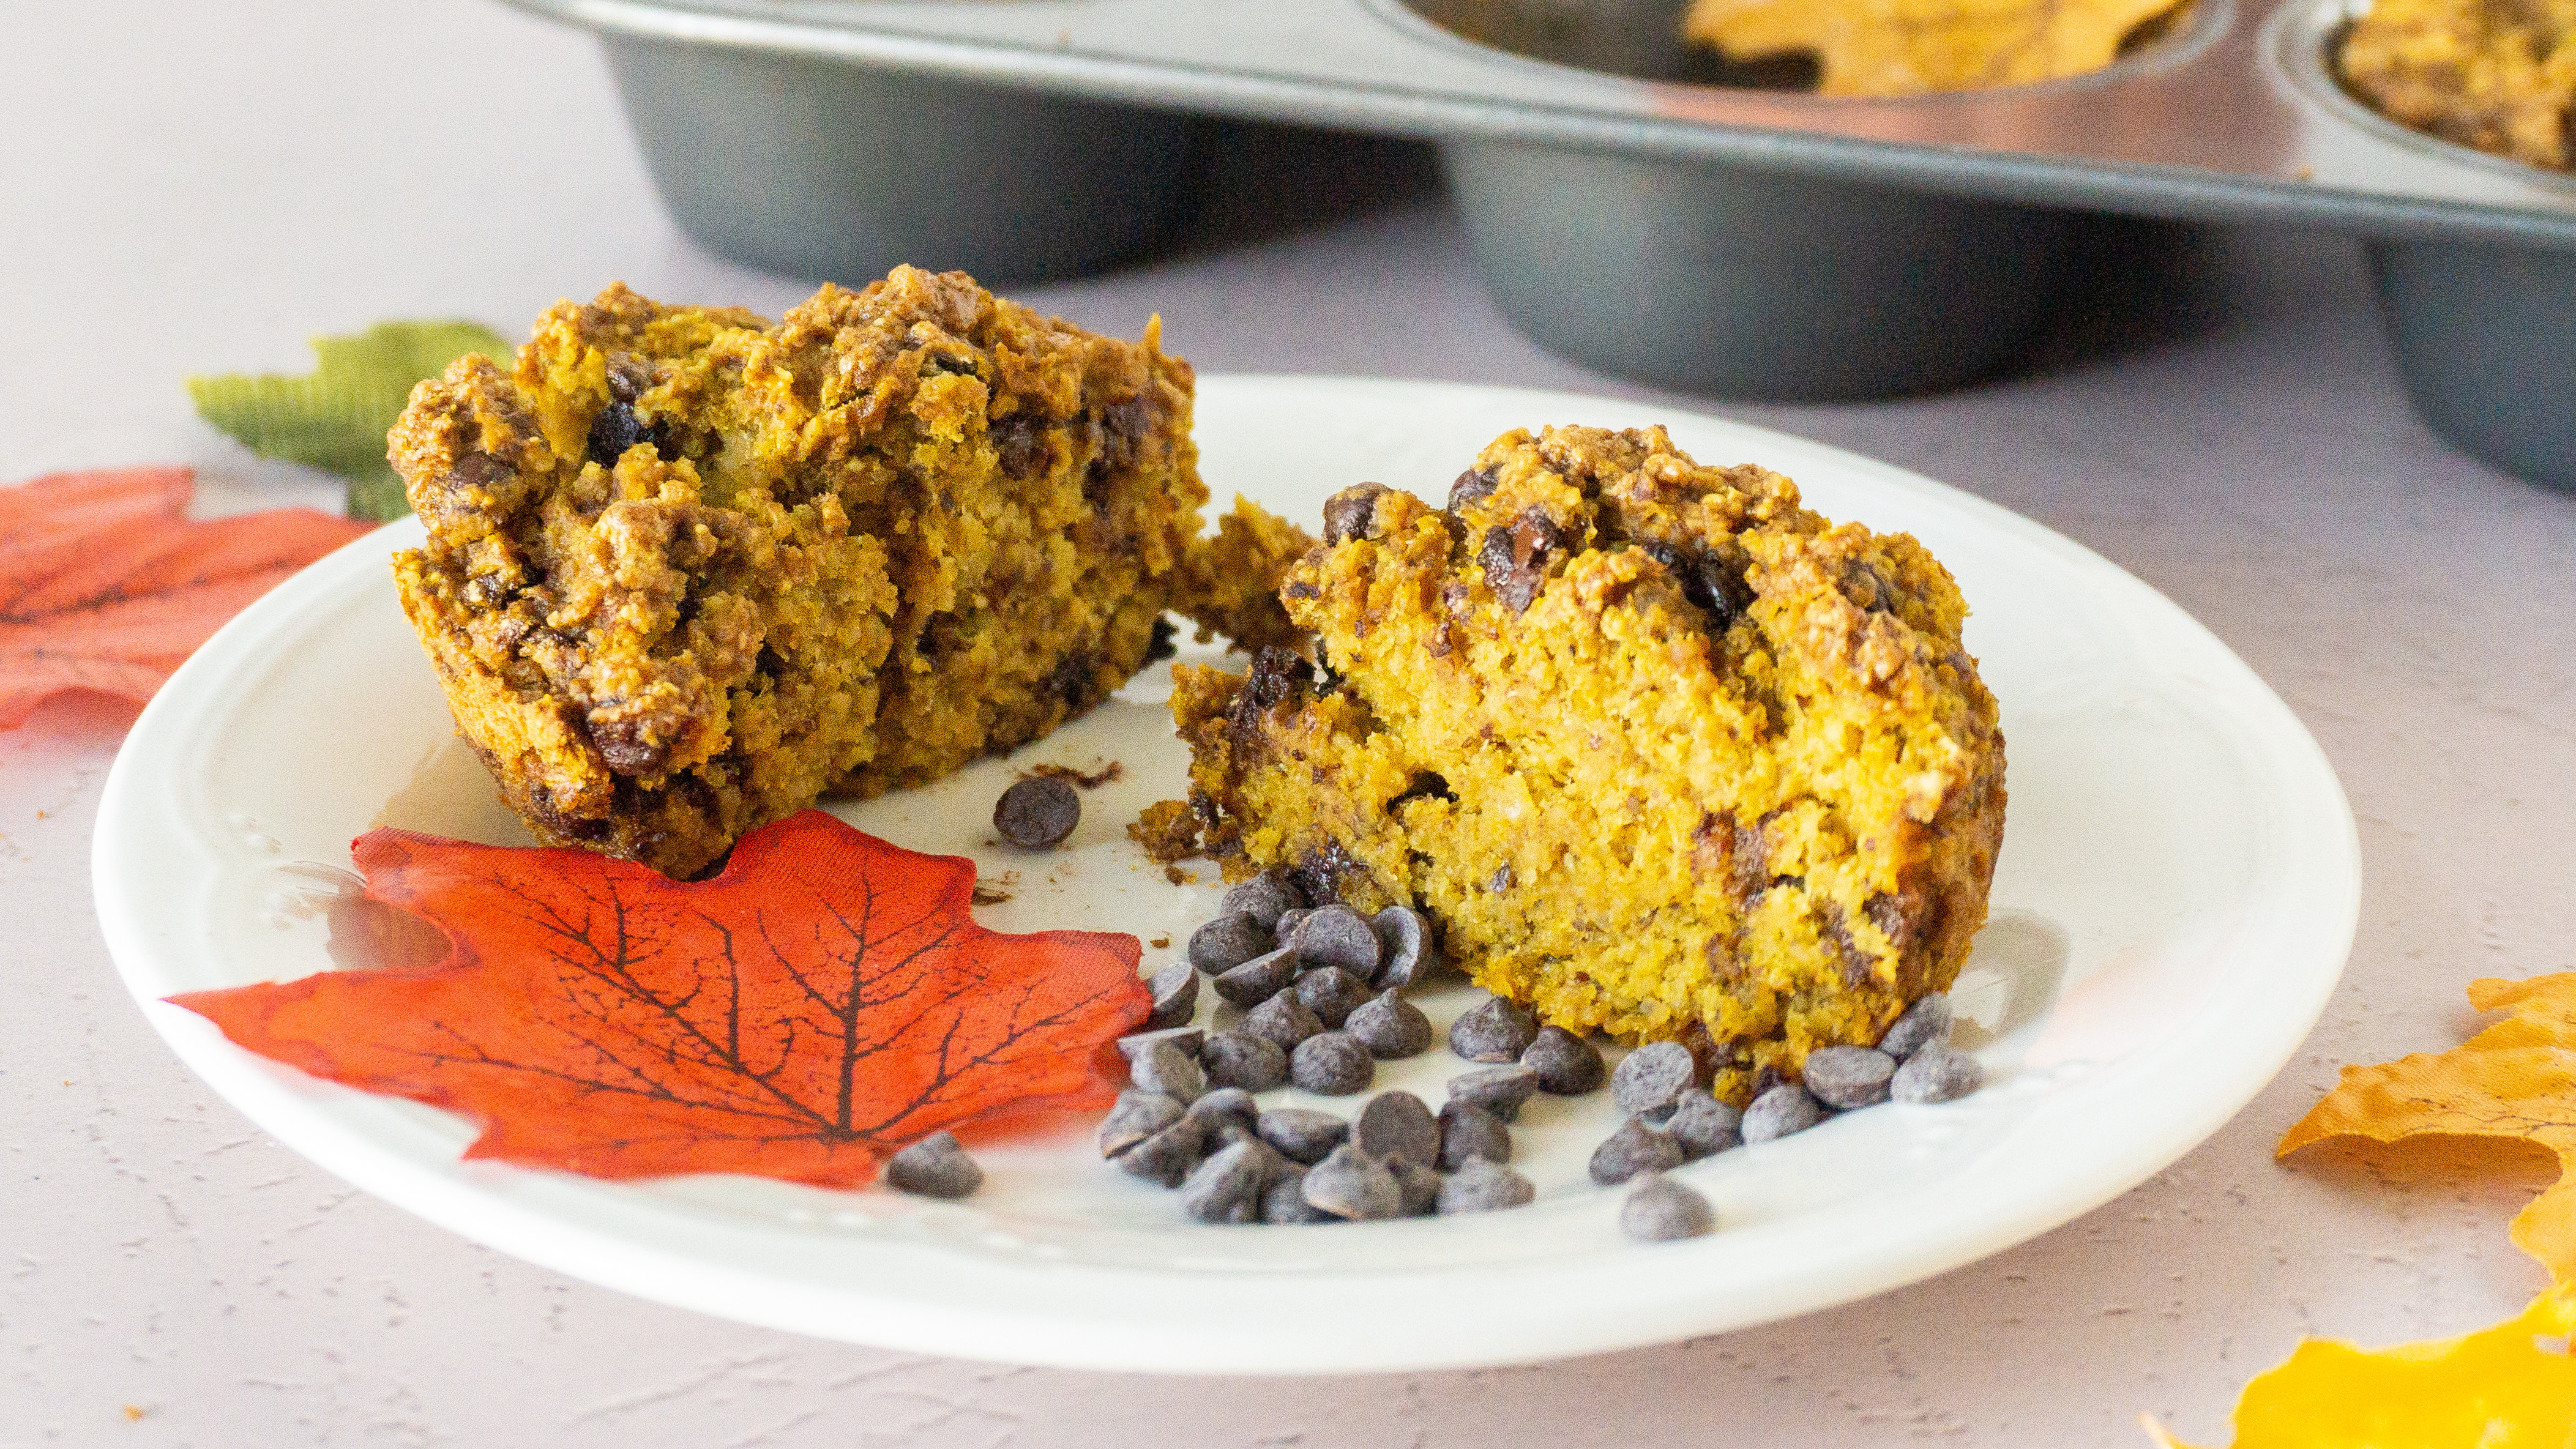 gluten-free, Vegan pumpkin muffin recipe